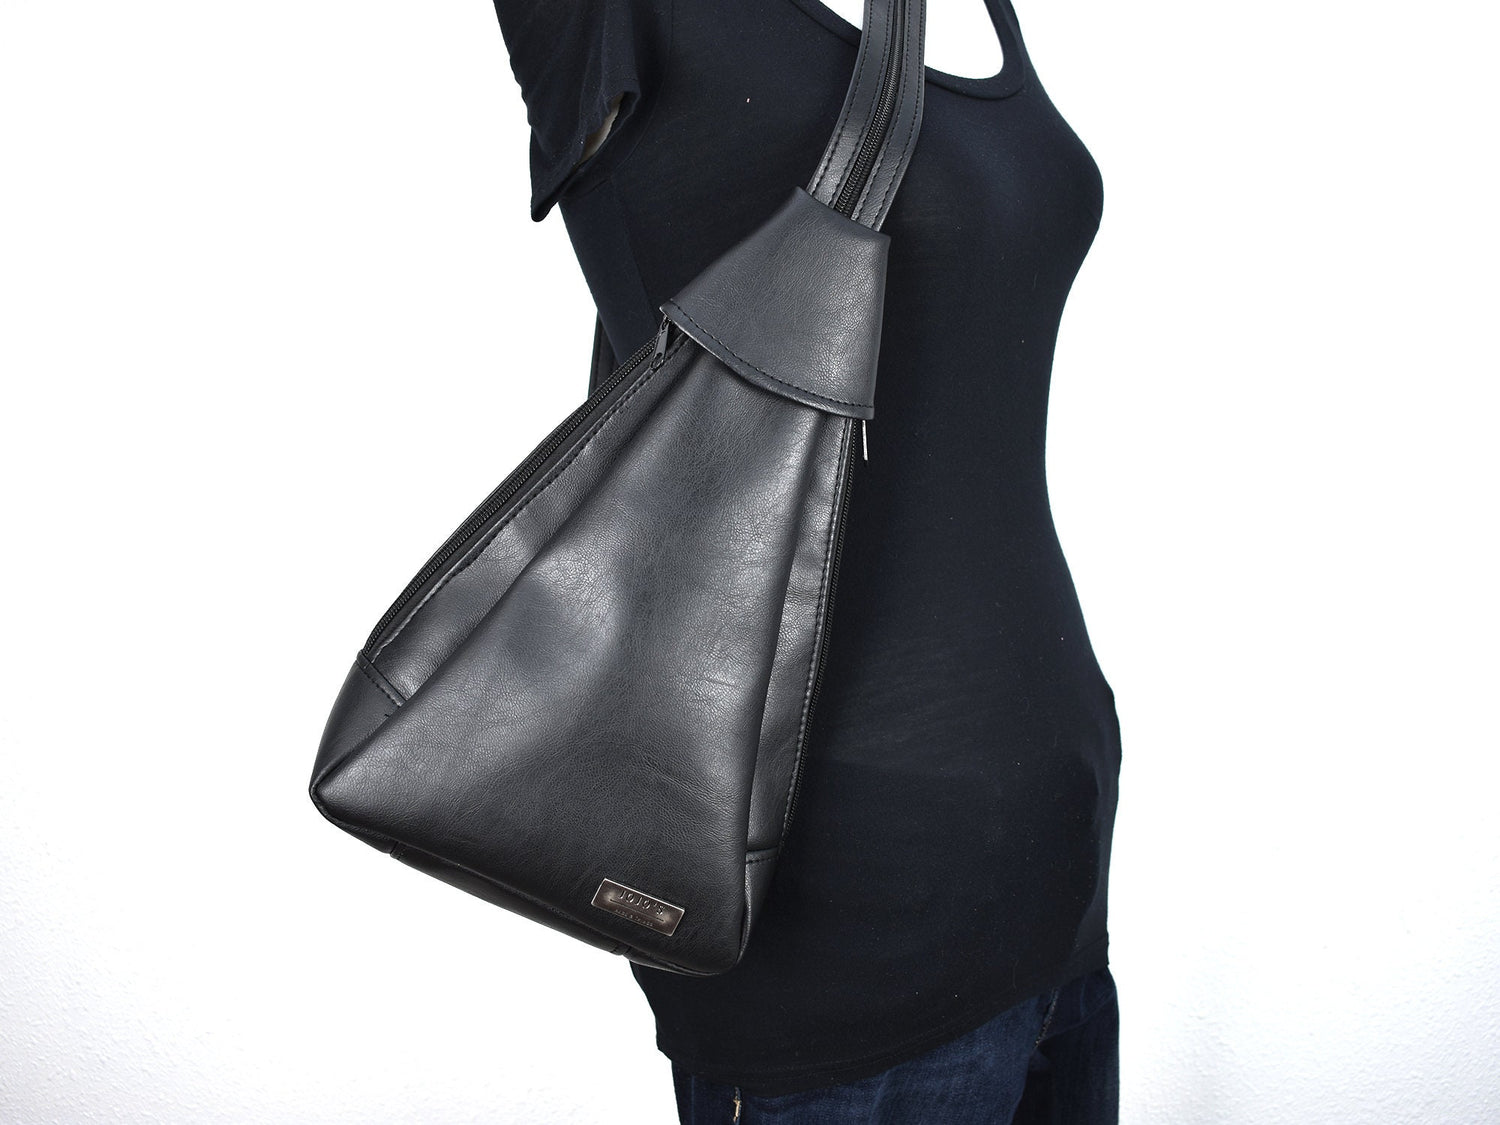 Backpack Tirrana Nine West Original, Color Terra-Rose, Tamaño Mediano  💖💖💖 Precio:Q500+Envío #keicistore #tiendaonline #moda #b... | Instagram